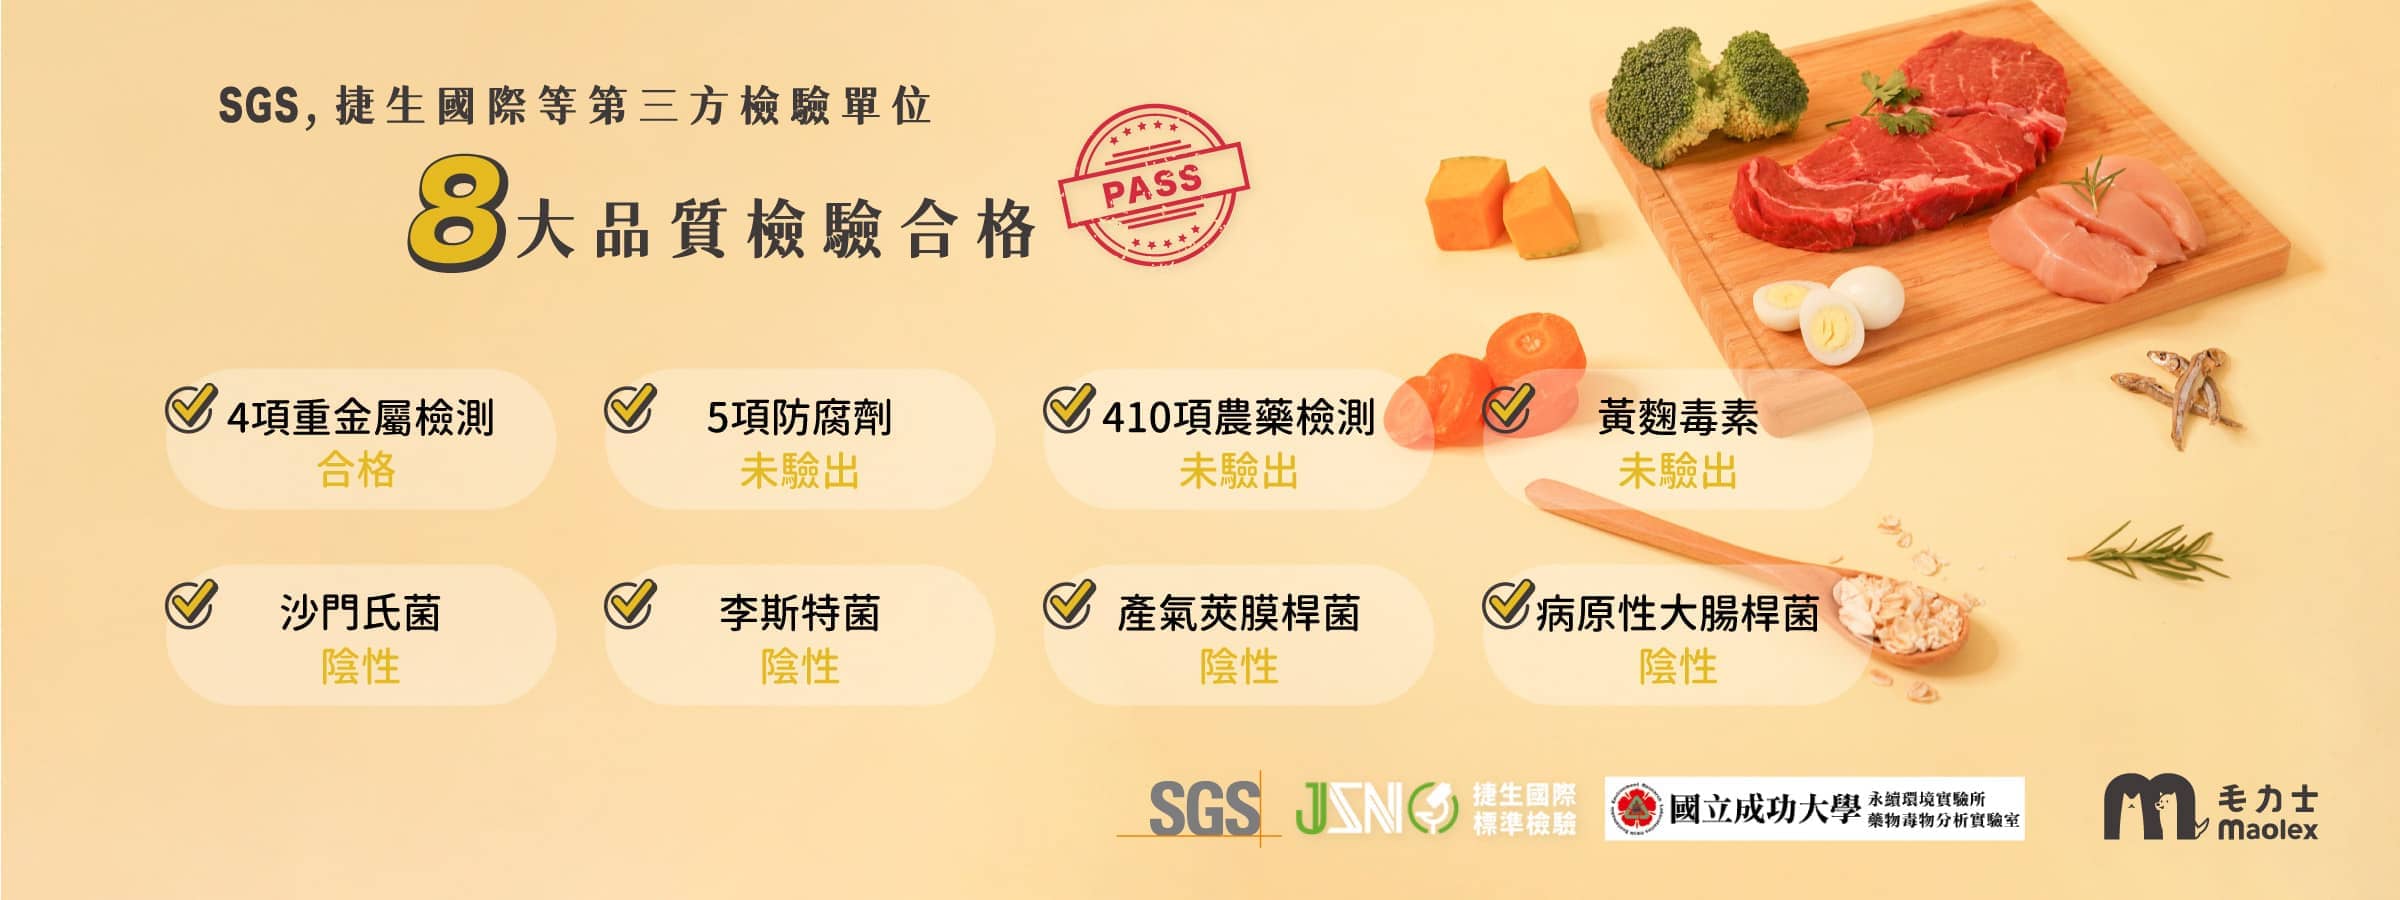 毛力士-寵物主食餐包-SGS, 捷生國際等第三方檢驗單位 8大品質檢驗合格